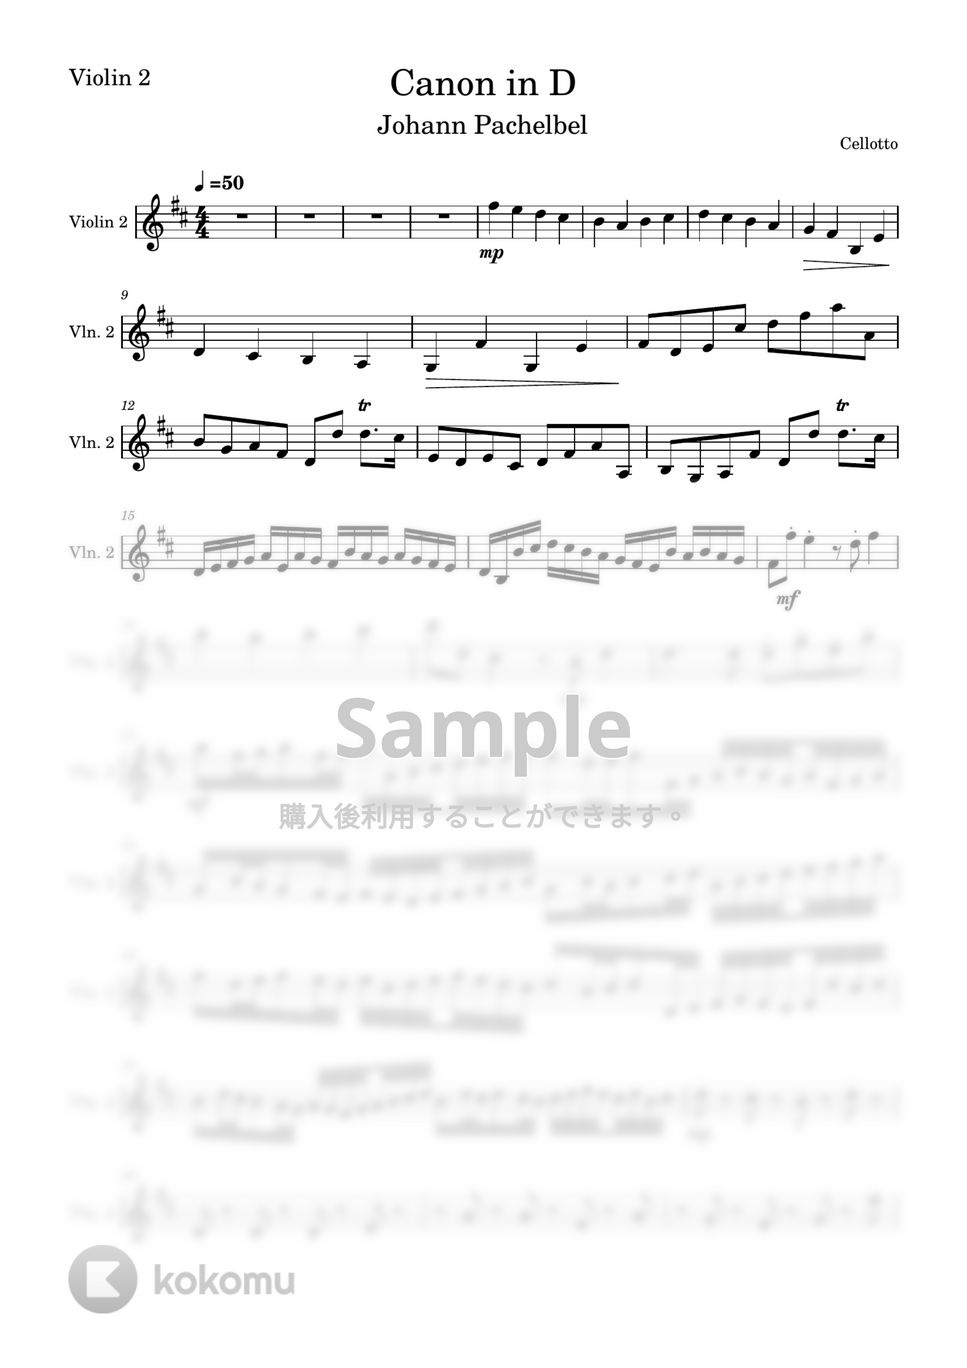 パッハルベル - カノン (ヴァイオリン2-弦楽四重奏) by Cellotto